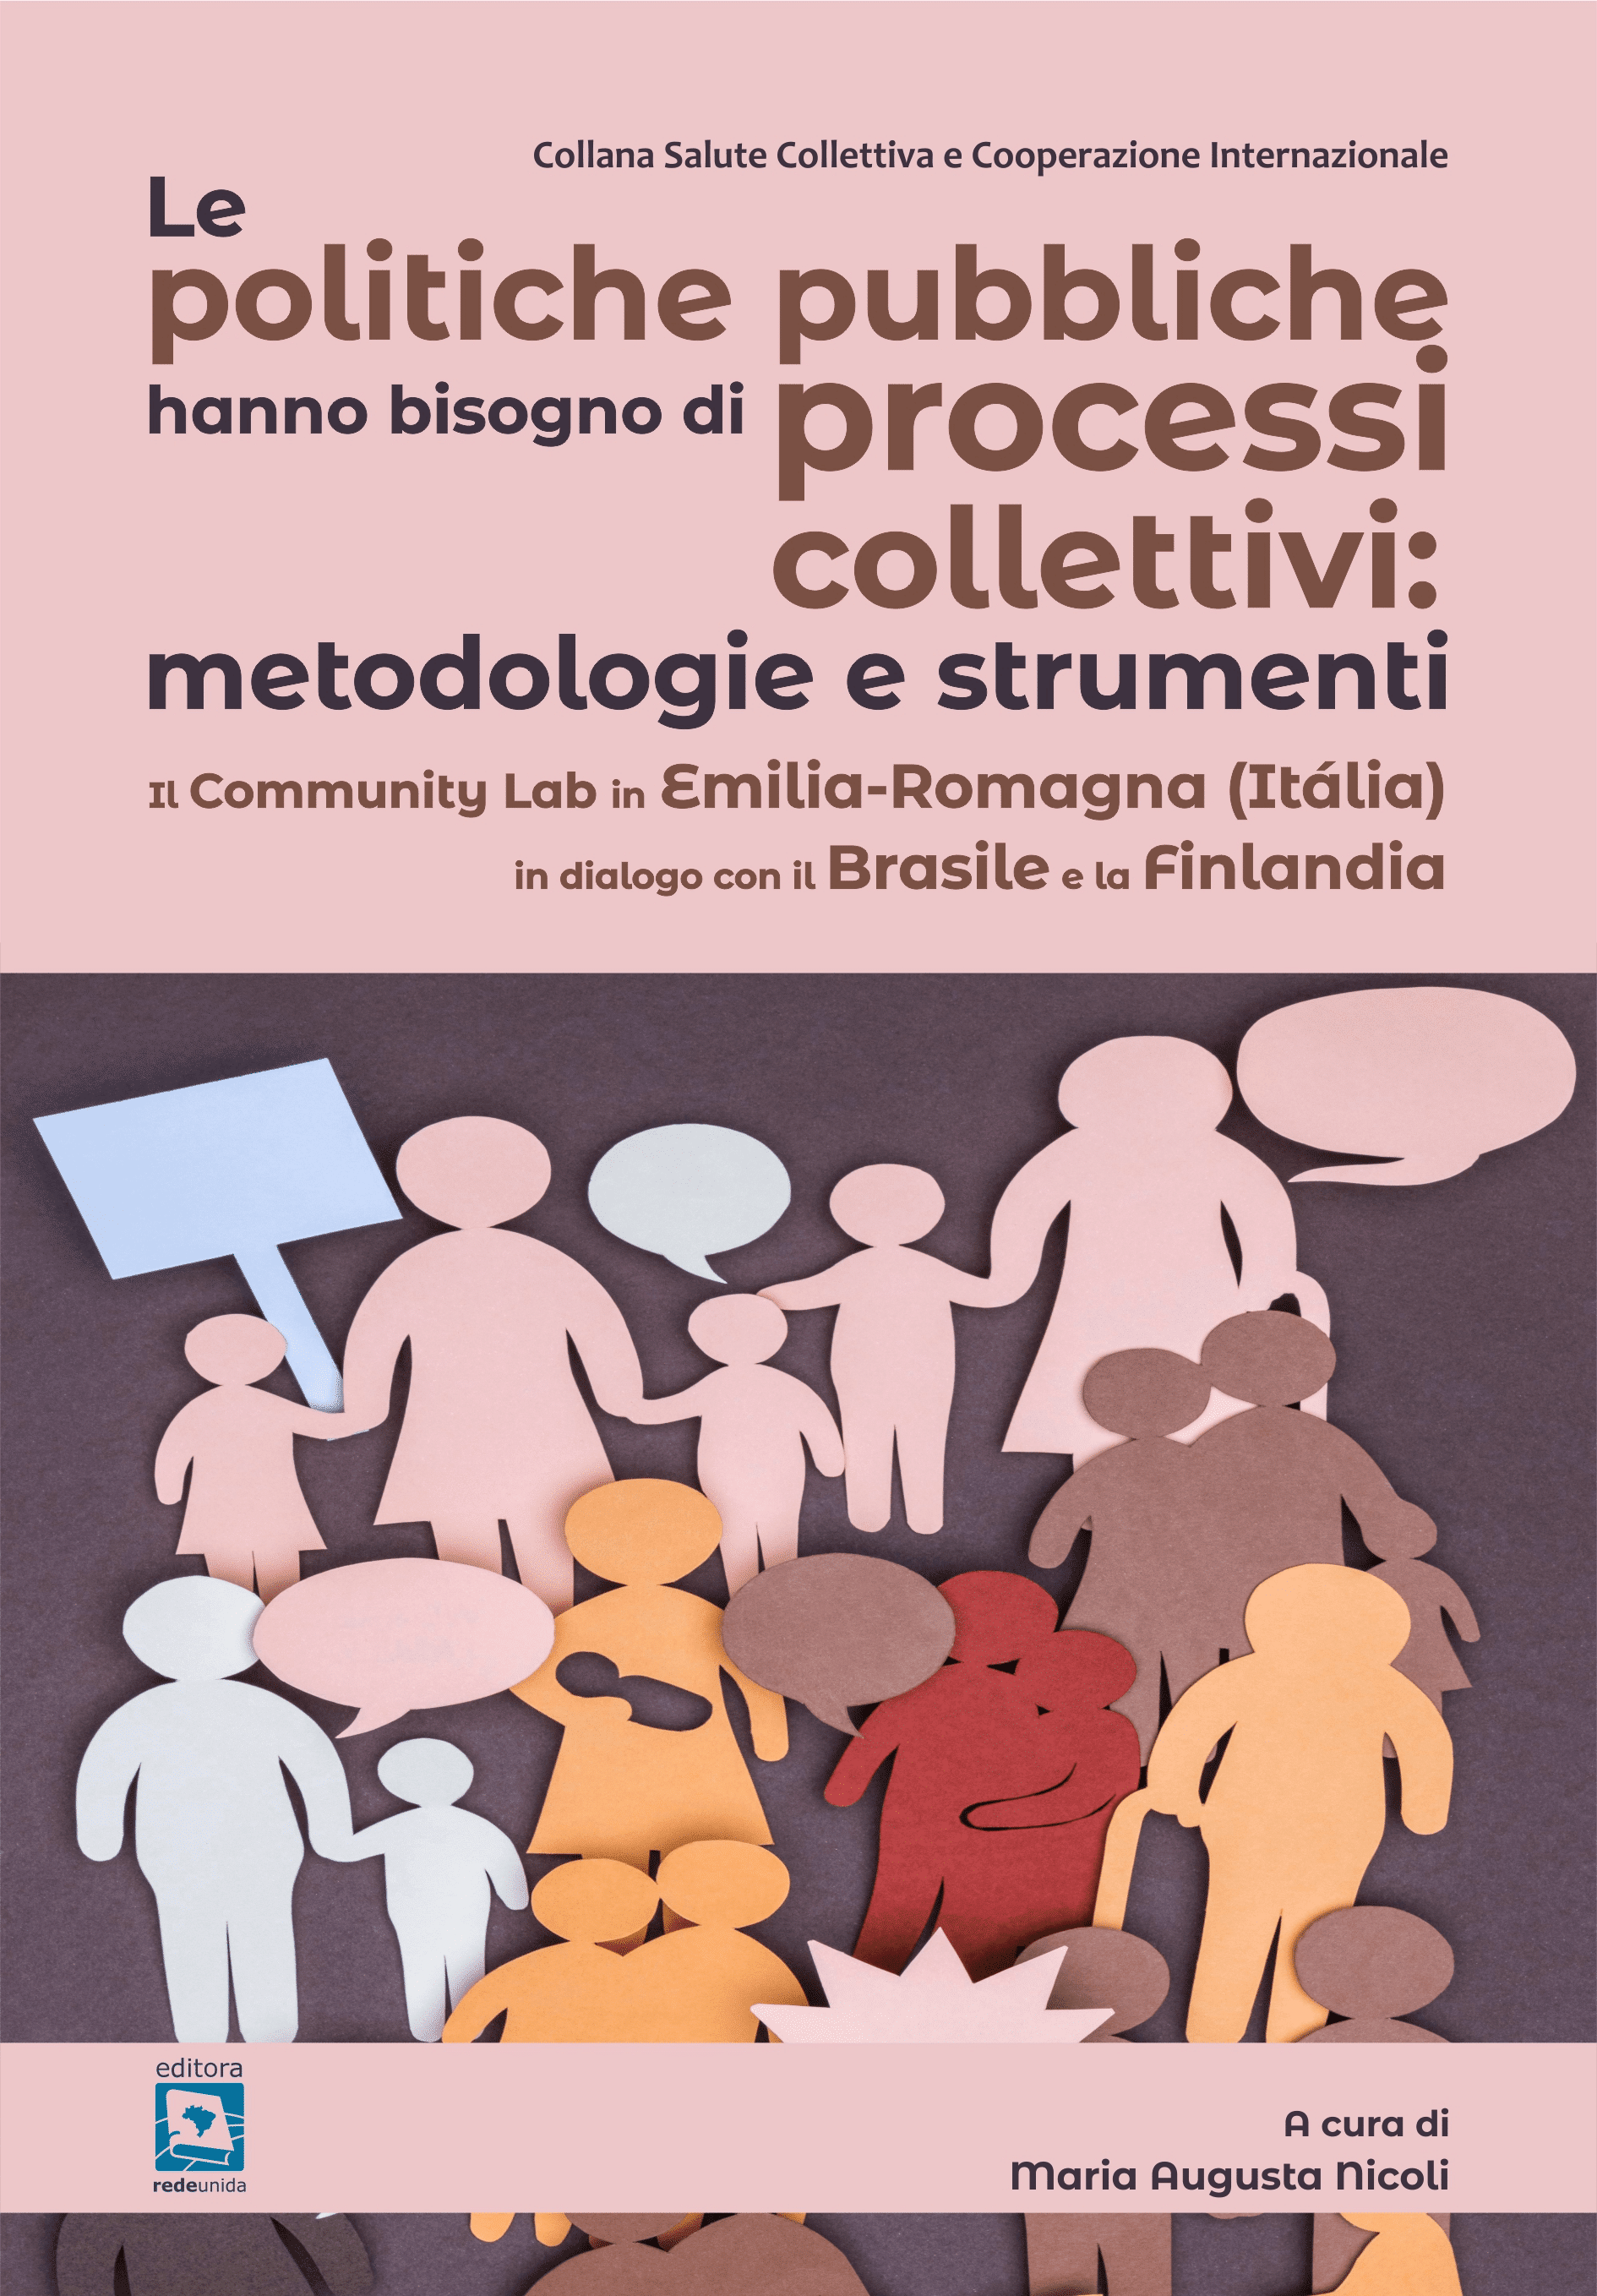 Le politiche pubbliche hanno bisogno di processi collettivi: metodologie e strumenti – Il Community Lab in Emilia-Romagna (Itália) in dialogo con il Brasile e la Finlandia 